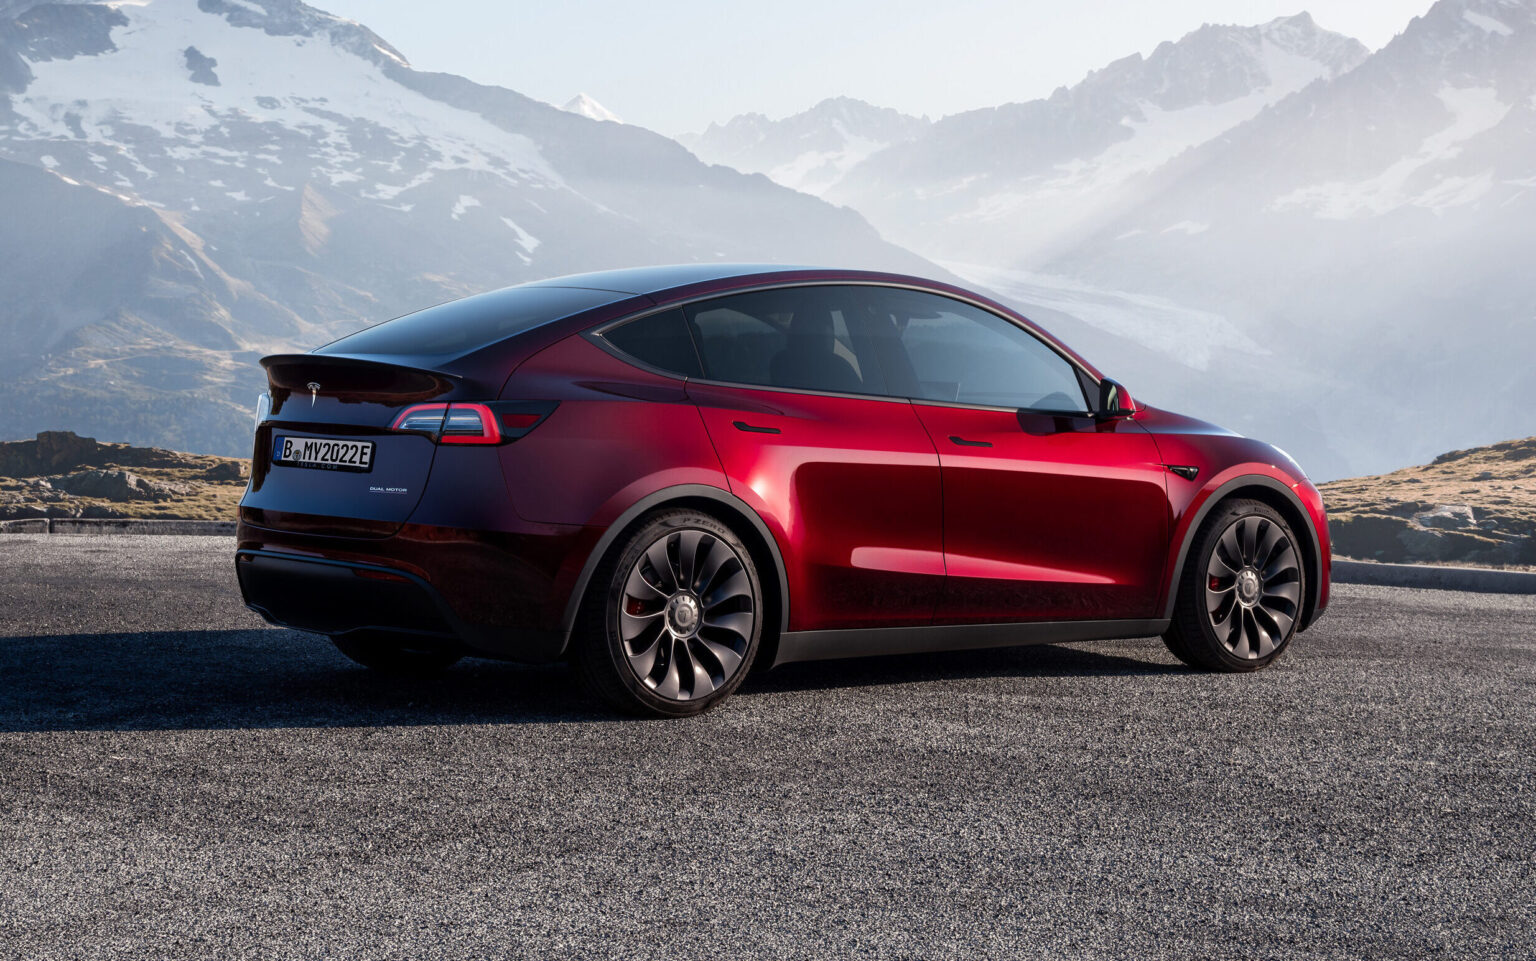 2023 Tesla Model Y Q3 2023 Sales Exterior Image 2